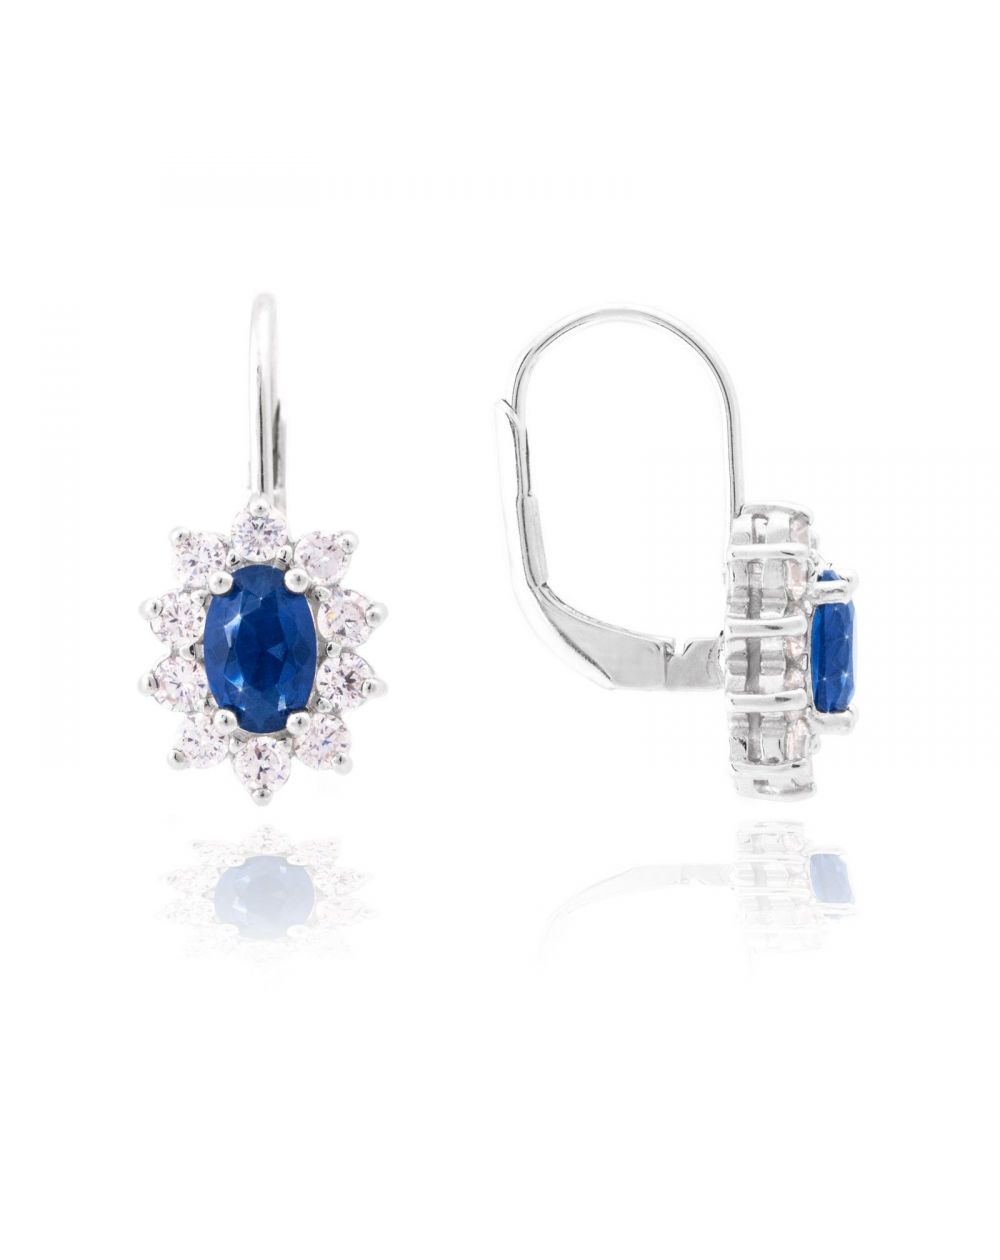 Bijou en argent - Earrings Diana sapphire blue